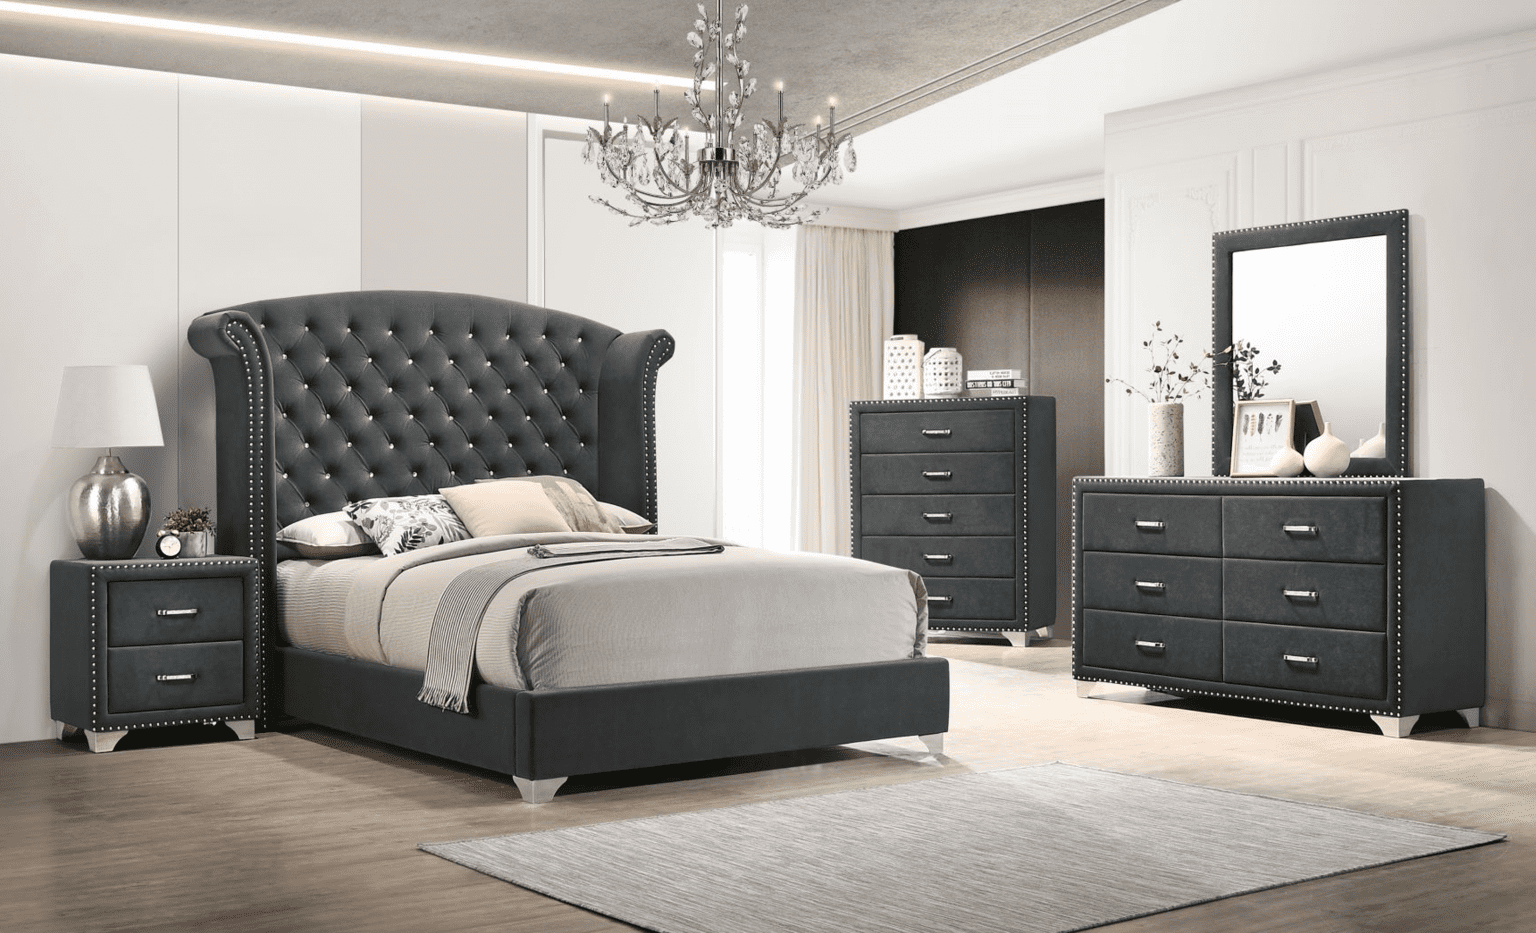 Complete Bedroom Decor Sets